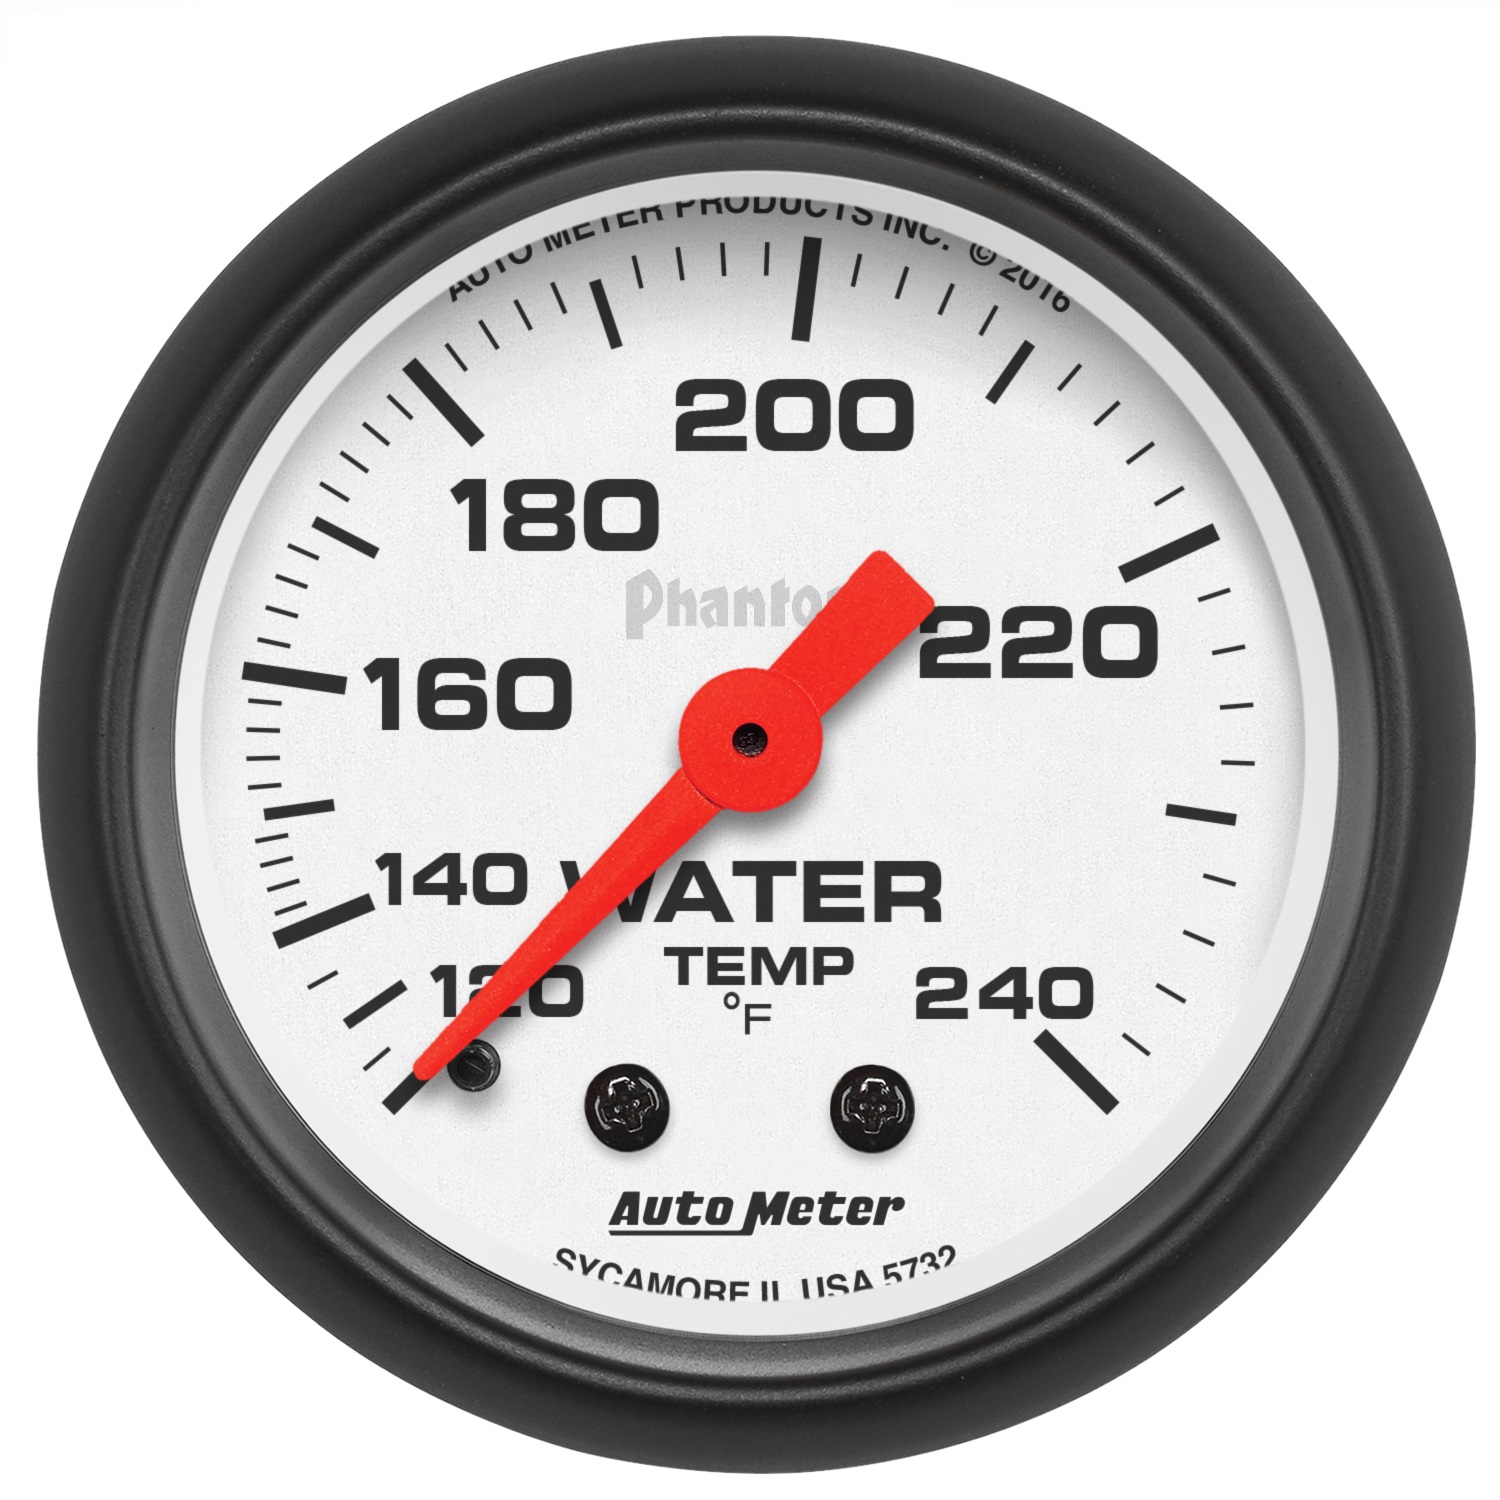 Auto Meter Auto Meter 5732 Phantom; Mechanical Water Temperature Gauge